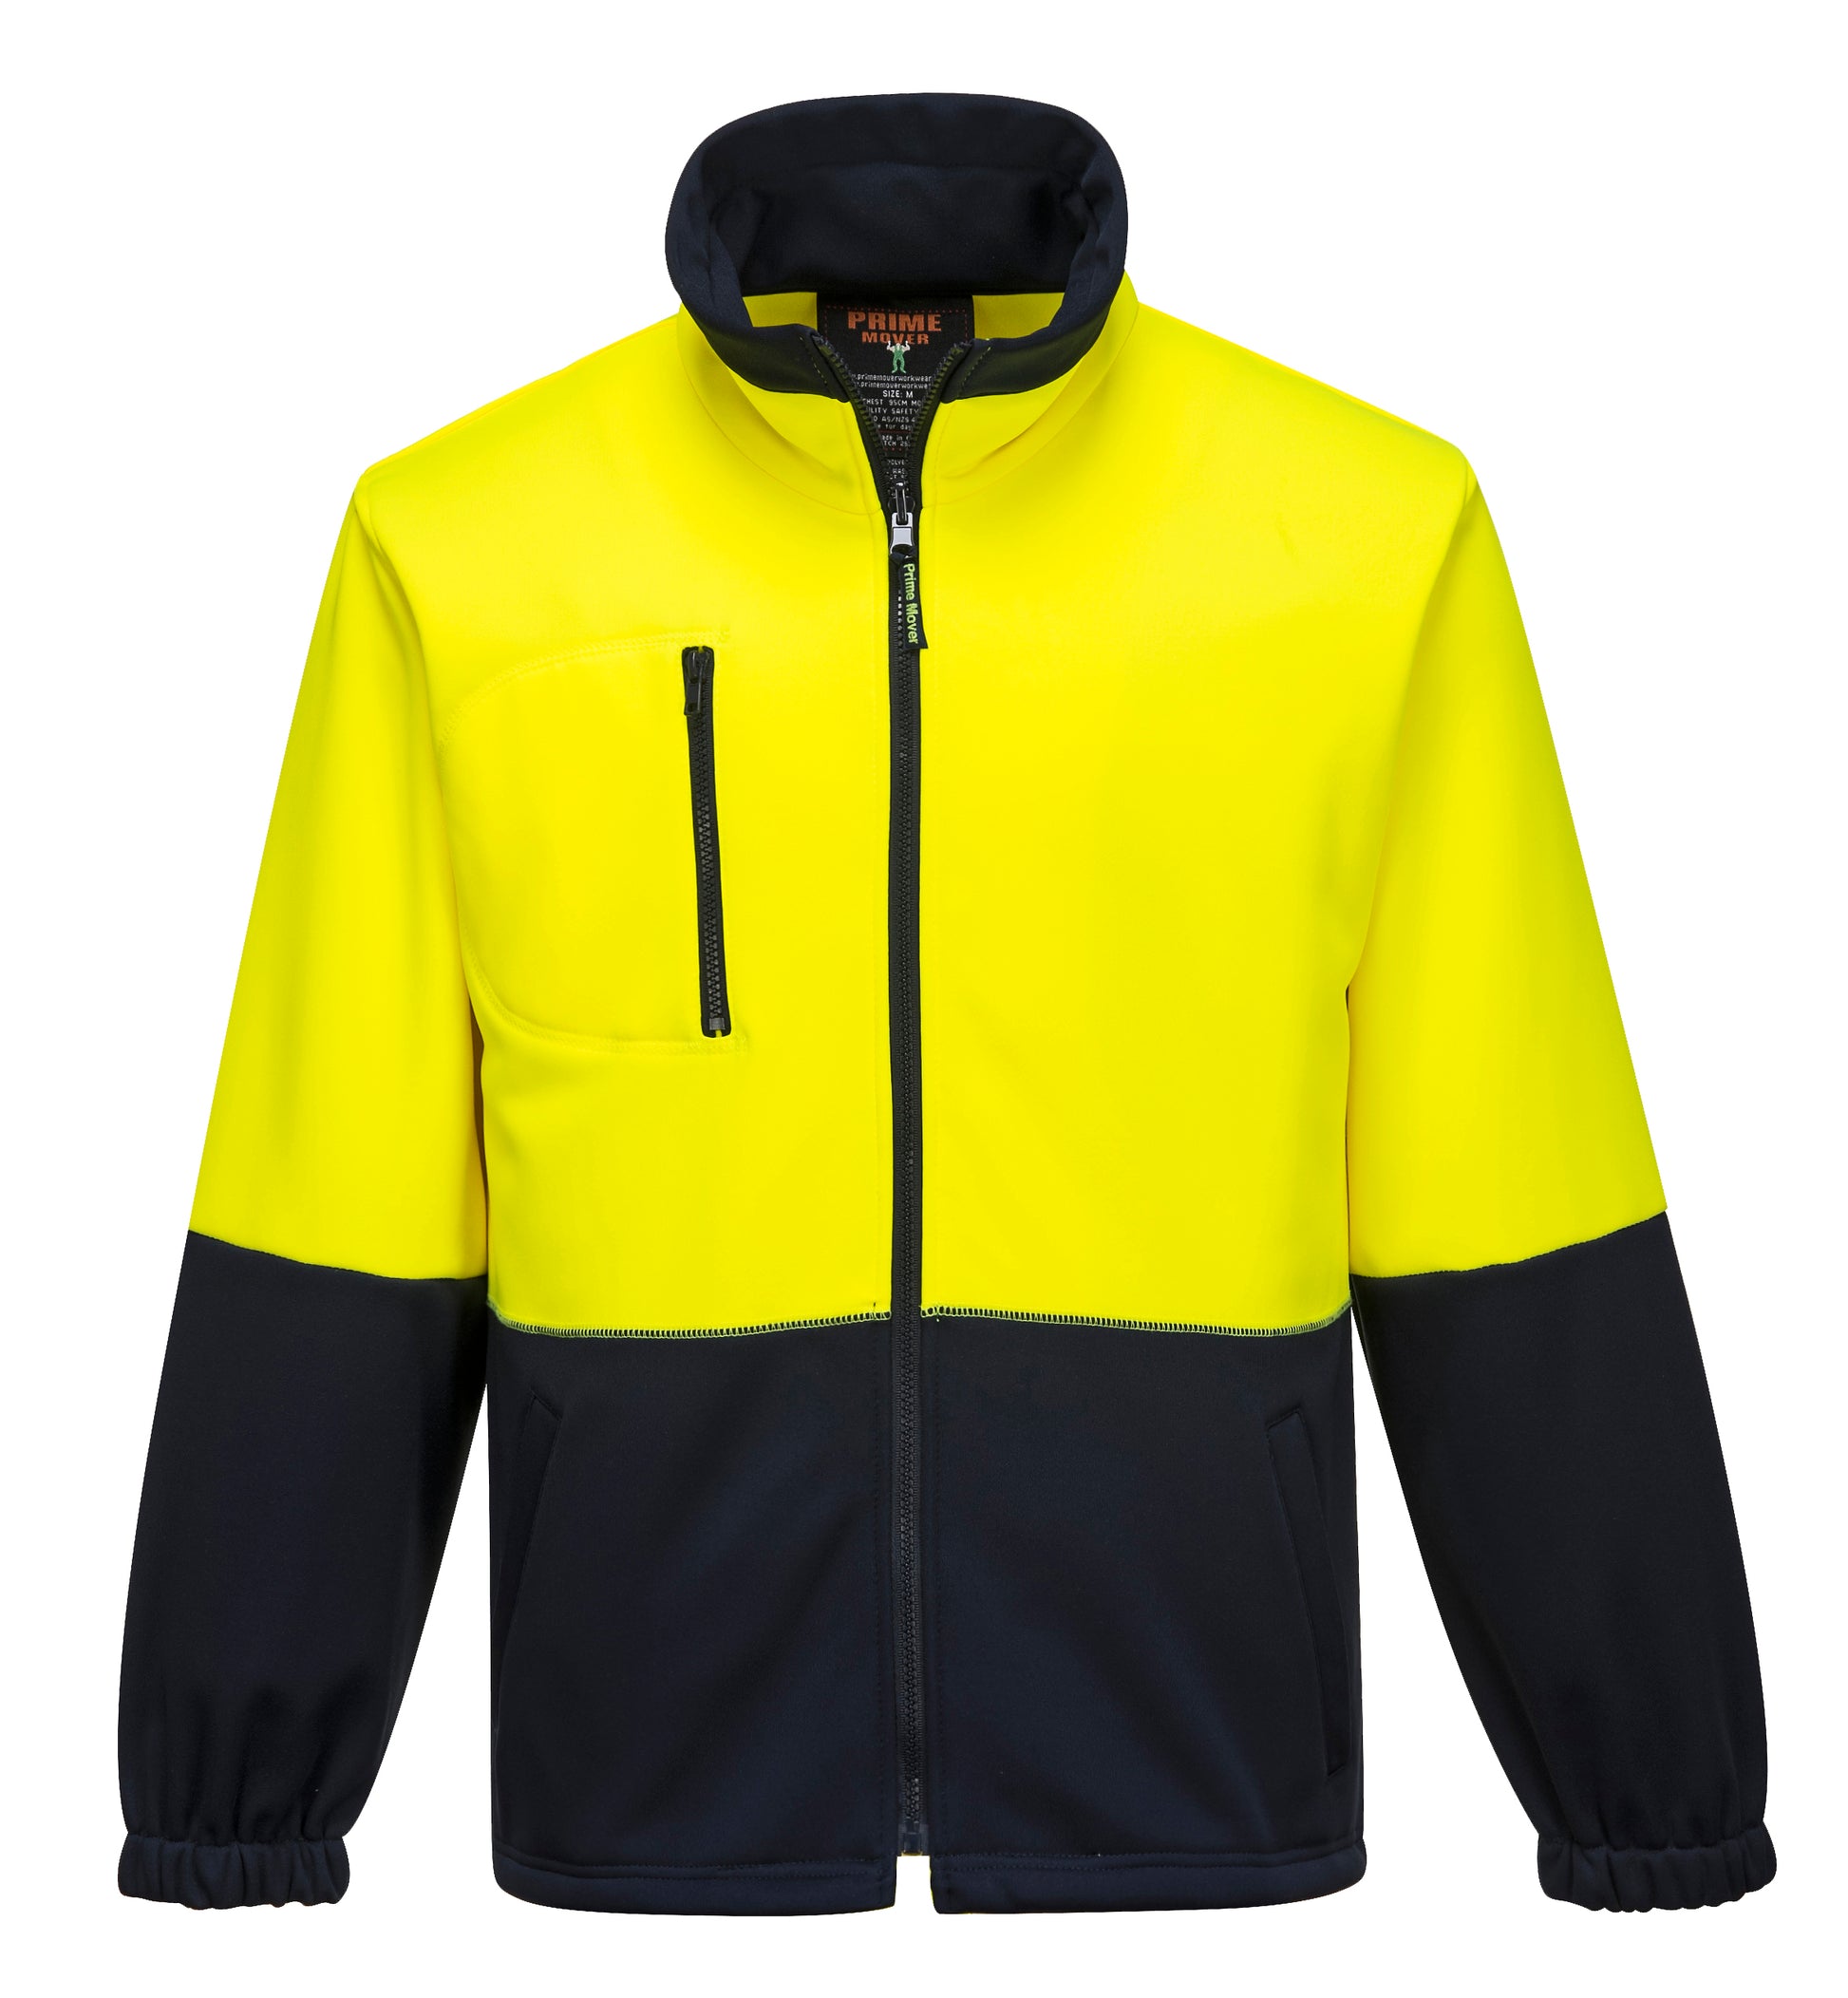 Water Repellent Brush Fleece Jacket yellow navy front zip- MH315